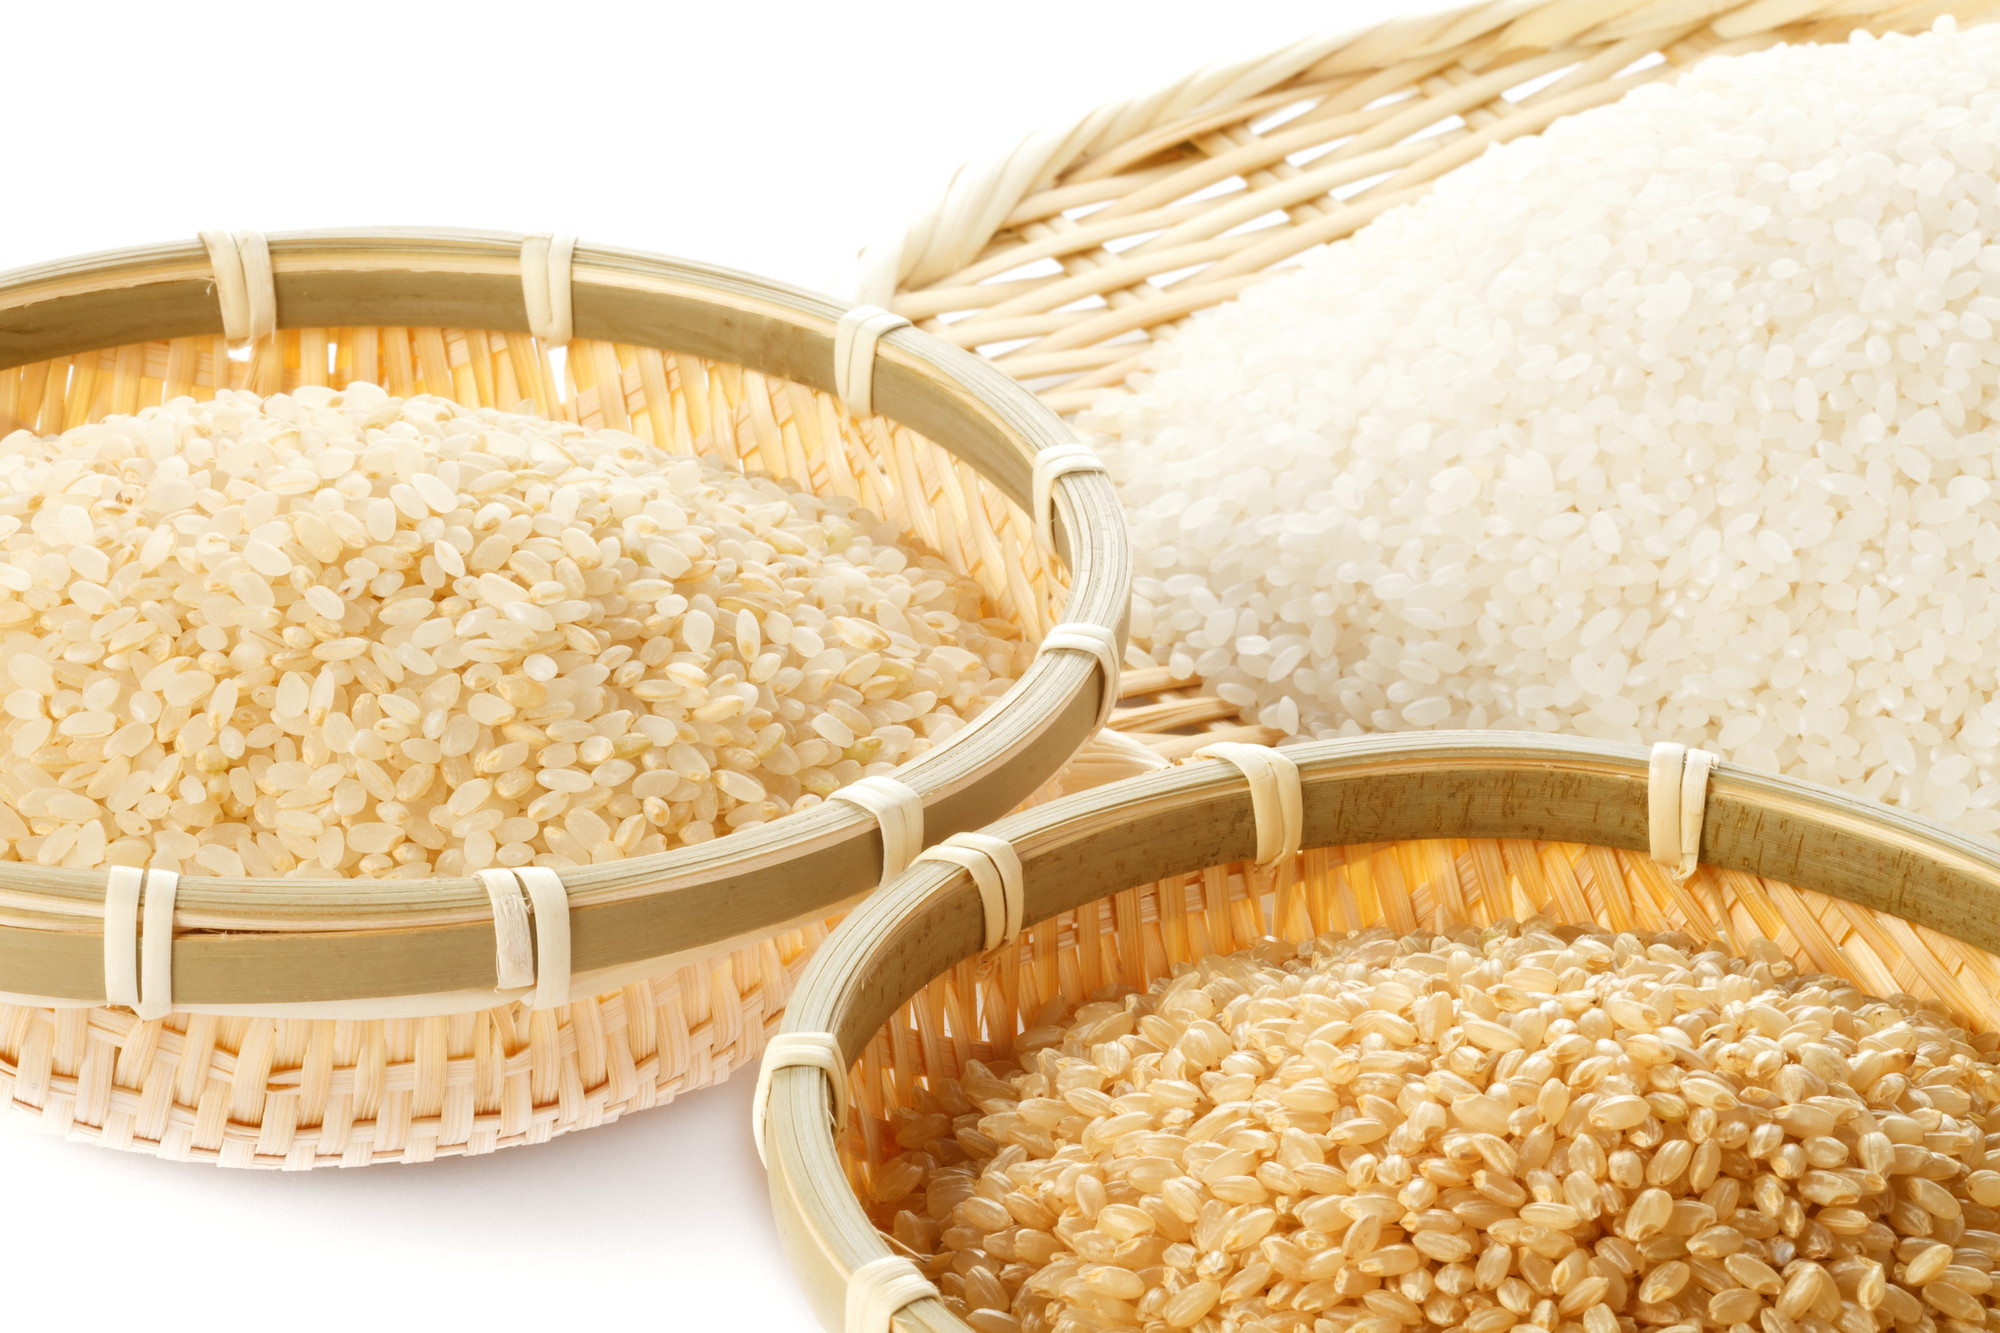 麦 と 玄米 の 違い